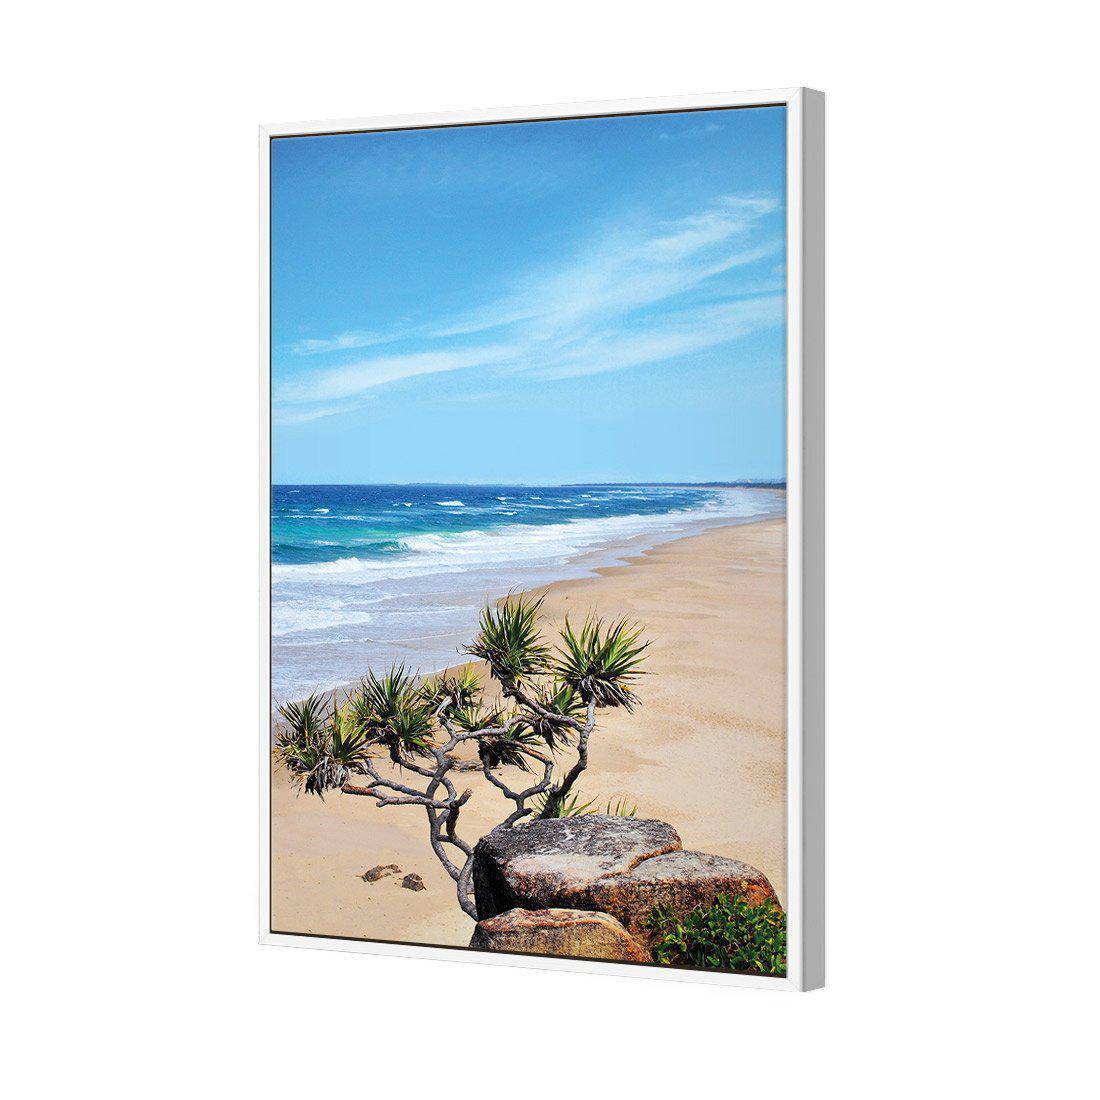 Coolum Beach Canvas Art-Canvas-Wall Art Designs-45x30cm-Canvas - White Frame-Wall Art Designs